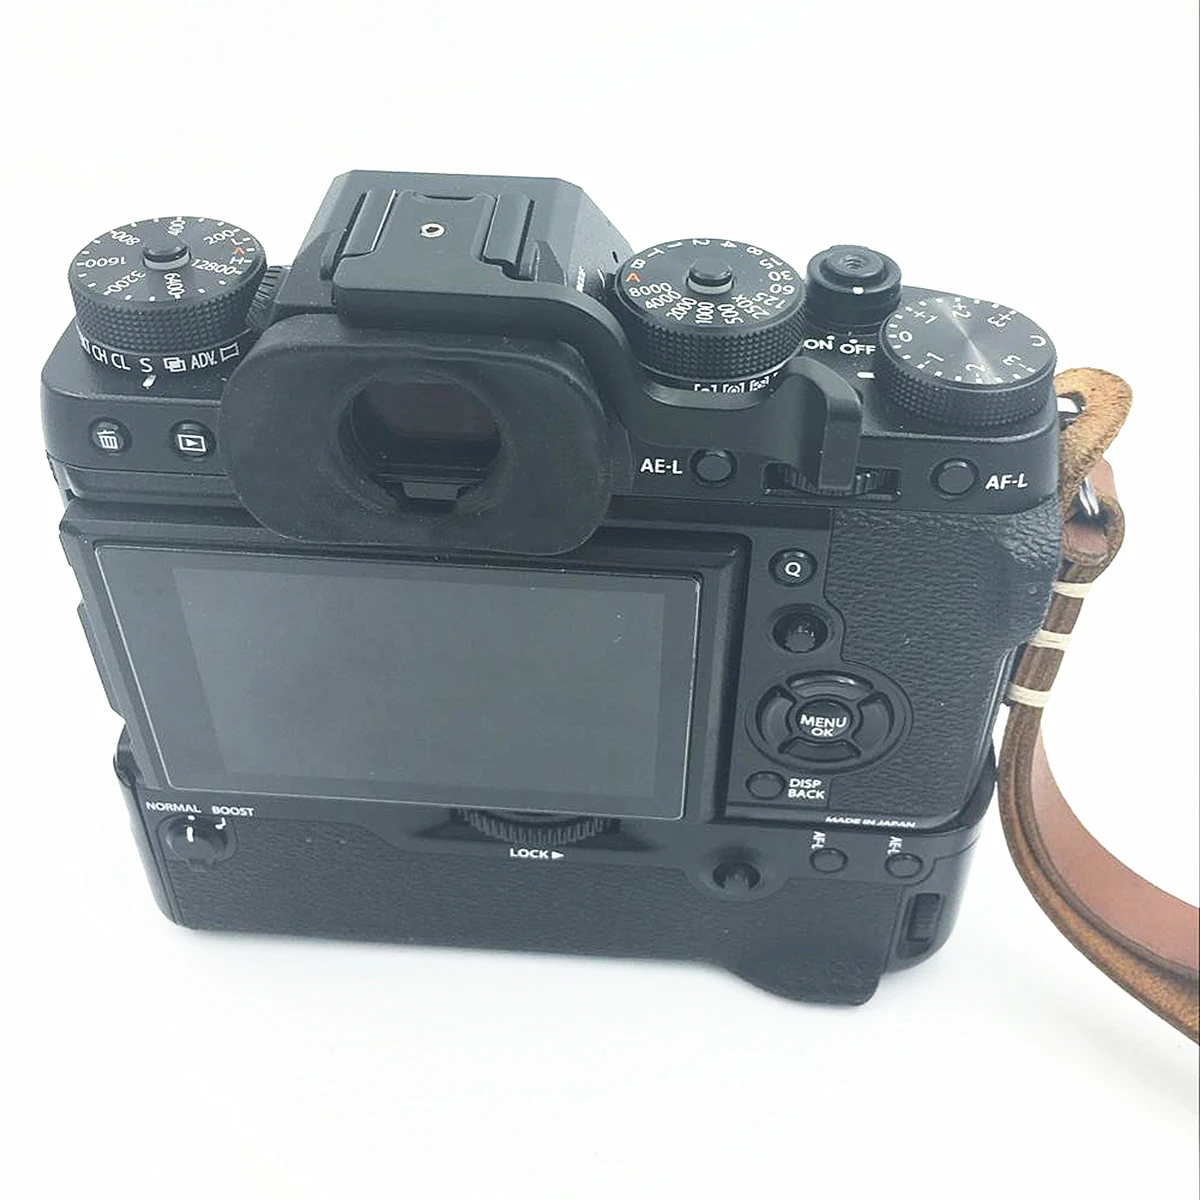 Цельнометаллическая плита типа горячий башмак с поднятым рычагом для ЖК-дисплея с подсветкой Fujifilm Fuji X-T1 X-T20 X-T10 XT1 XT20 XT10 Камера внешней вспышки типа горячий башмак